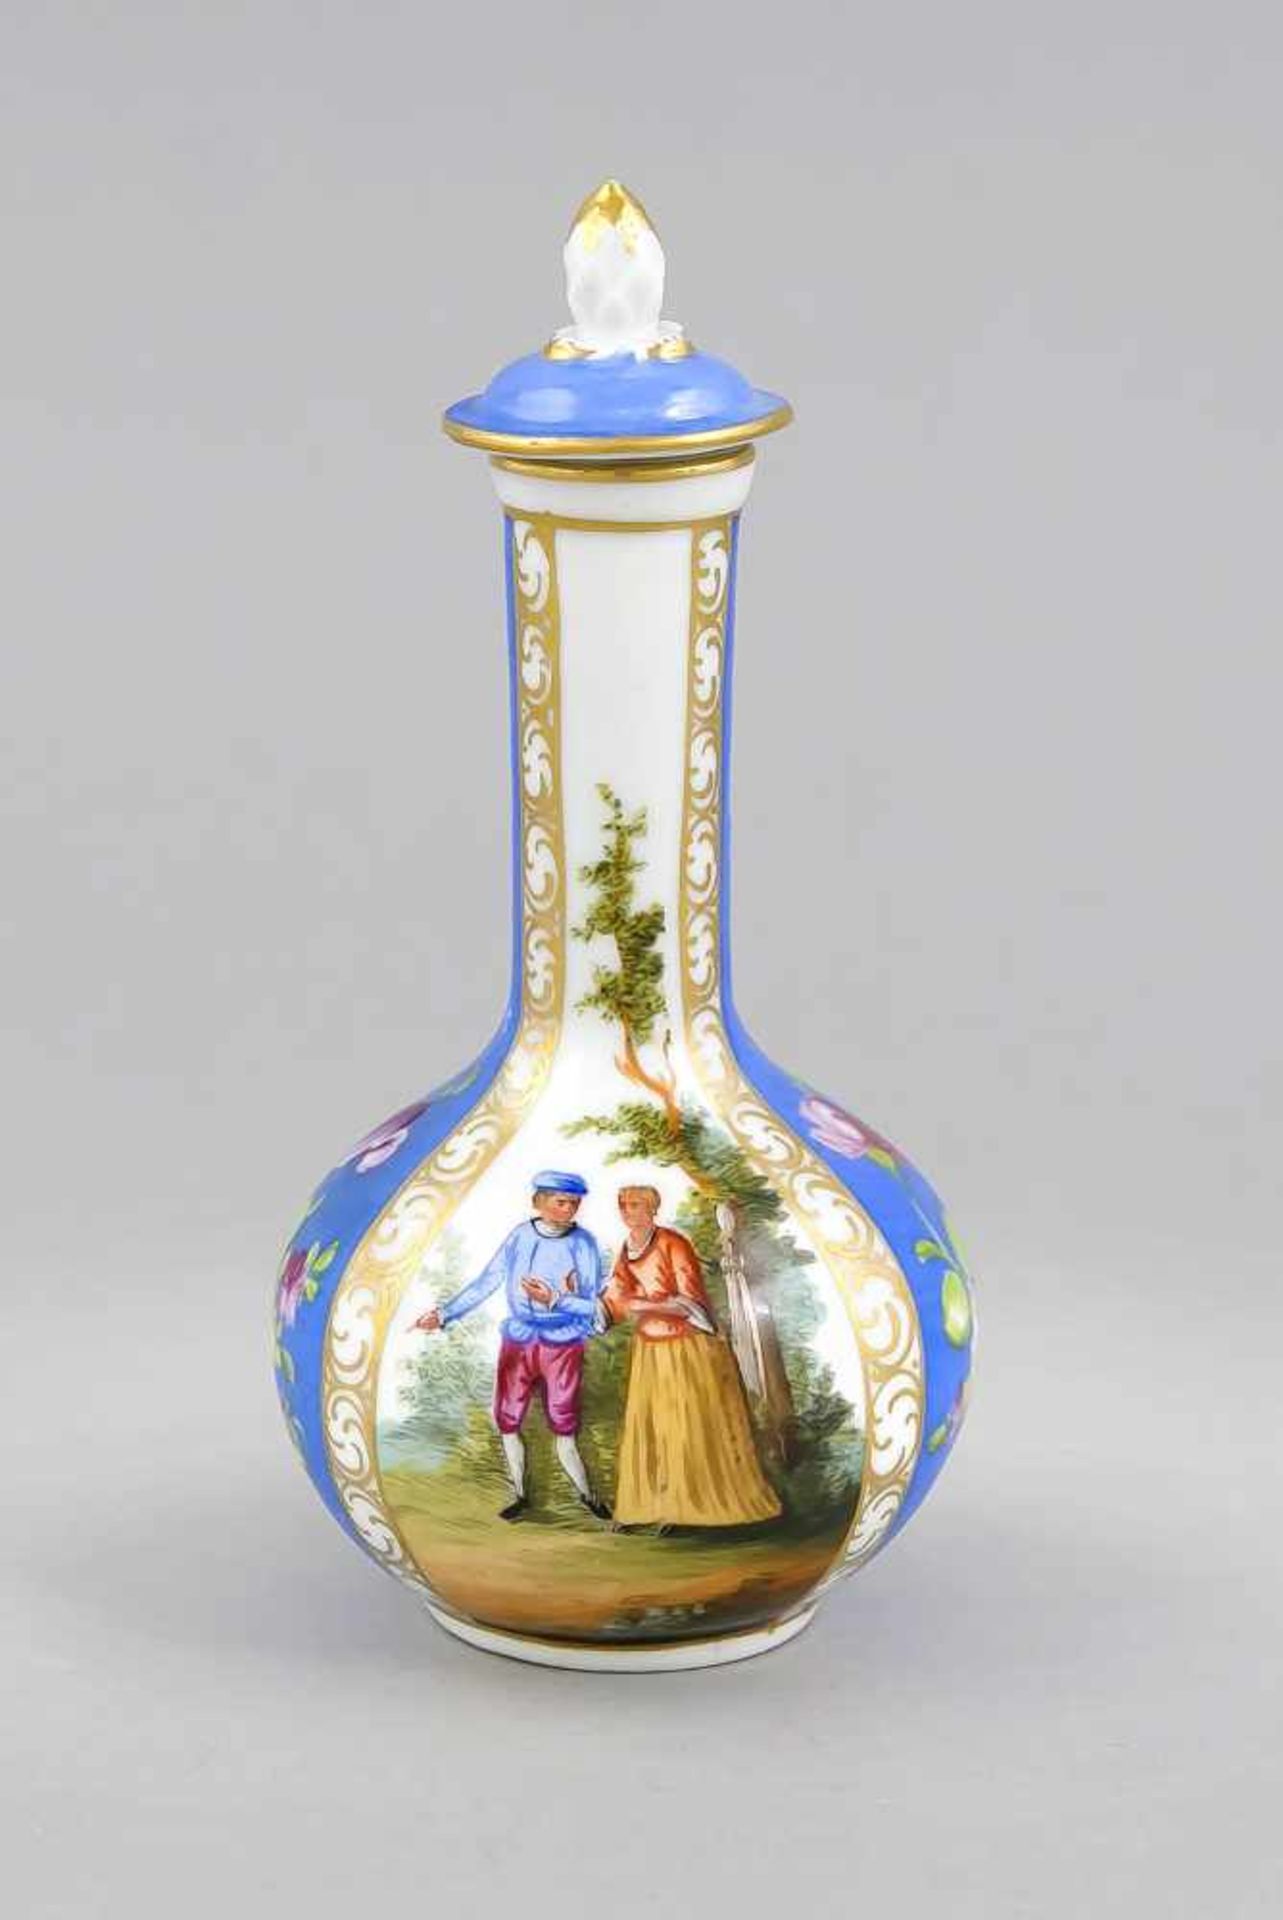 Kleine Deckelvase, Carl Thieme zu Potschappel, Dresden, Marke 1888-1901, Flaschenform mitDeckel (